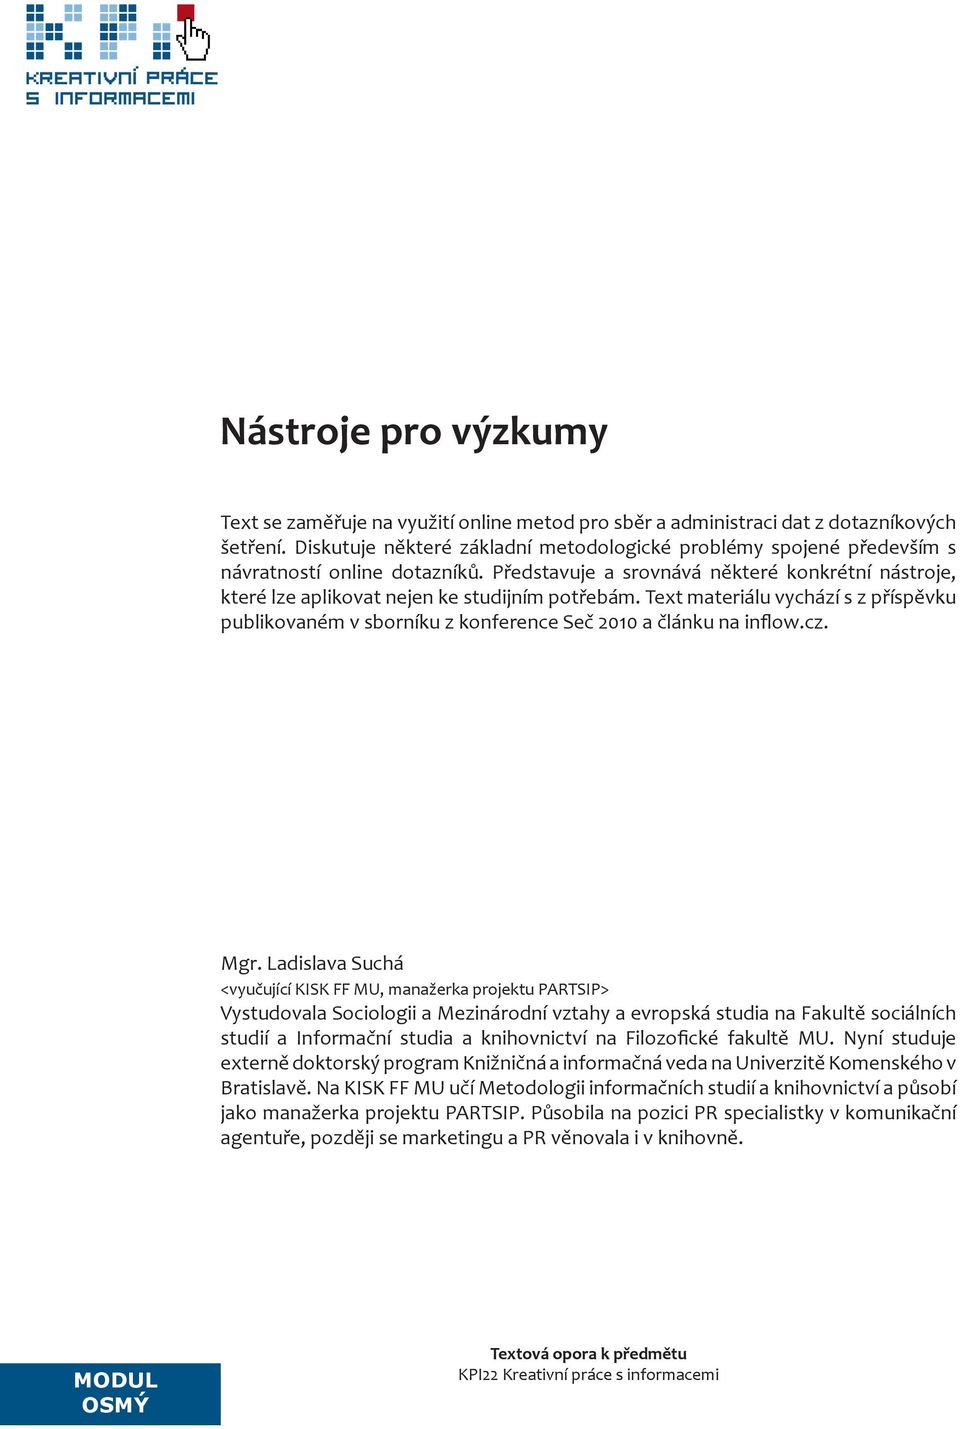 Text materiálu vychází s z příspěvku publikovaném v sborníku z konference Seč 2010 a článku na inflow.cz. Mgr.